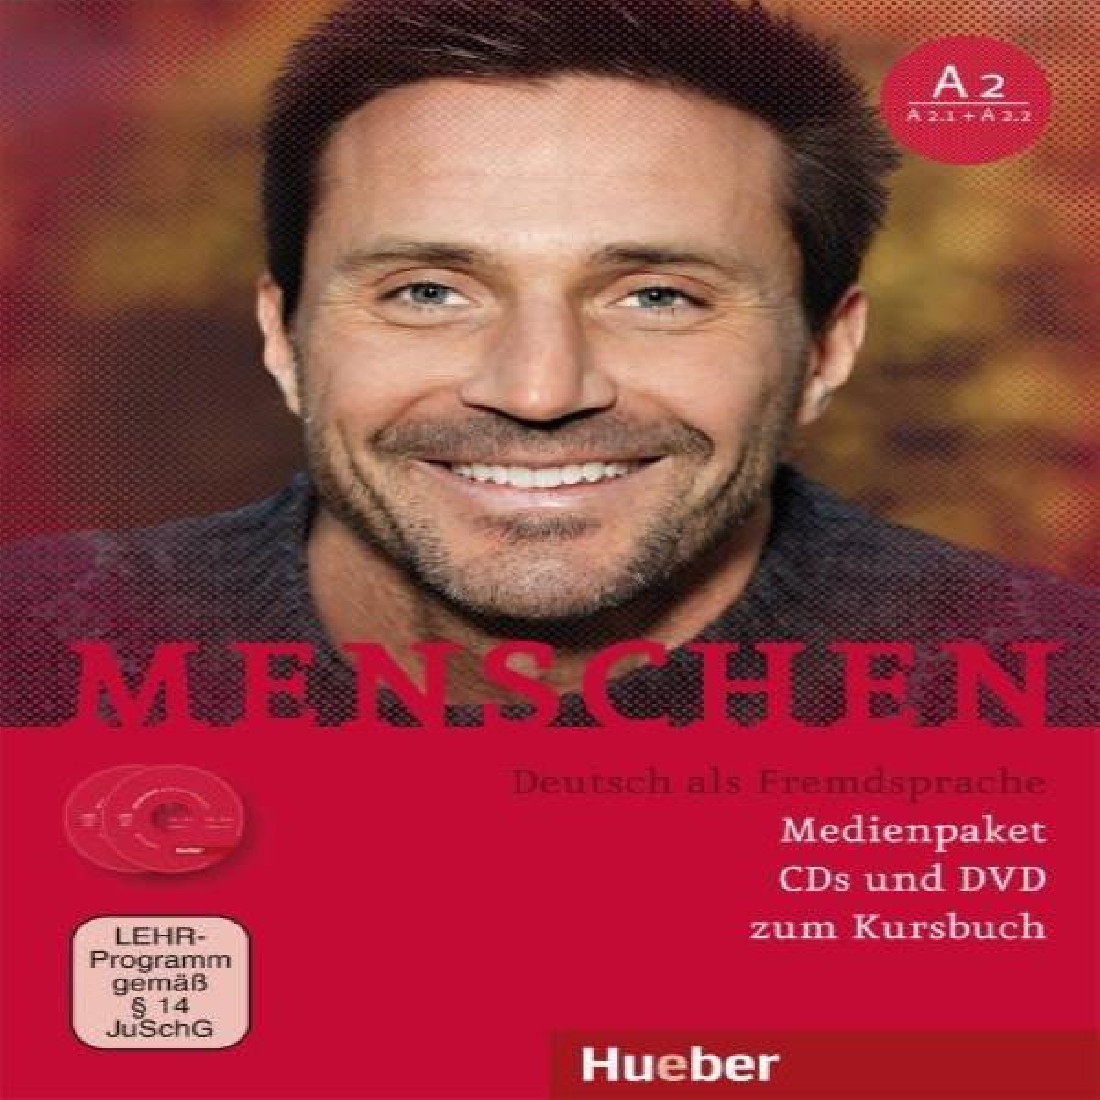 MENSCHEN A2 MEDIENPAKET (CD & DVD)